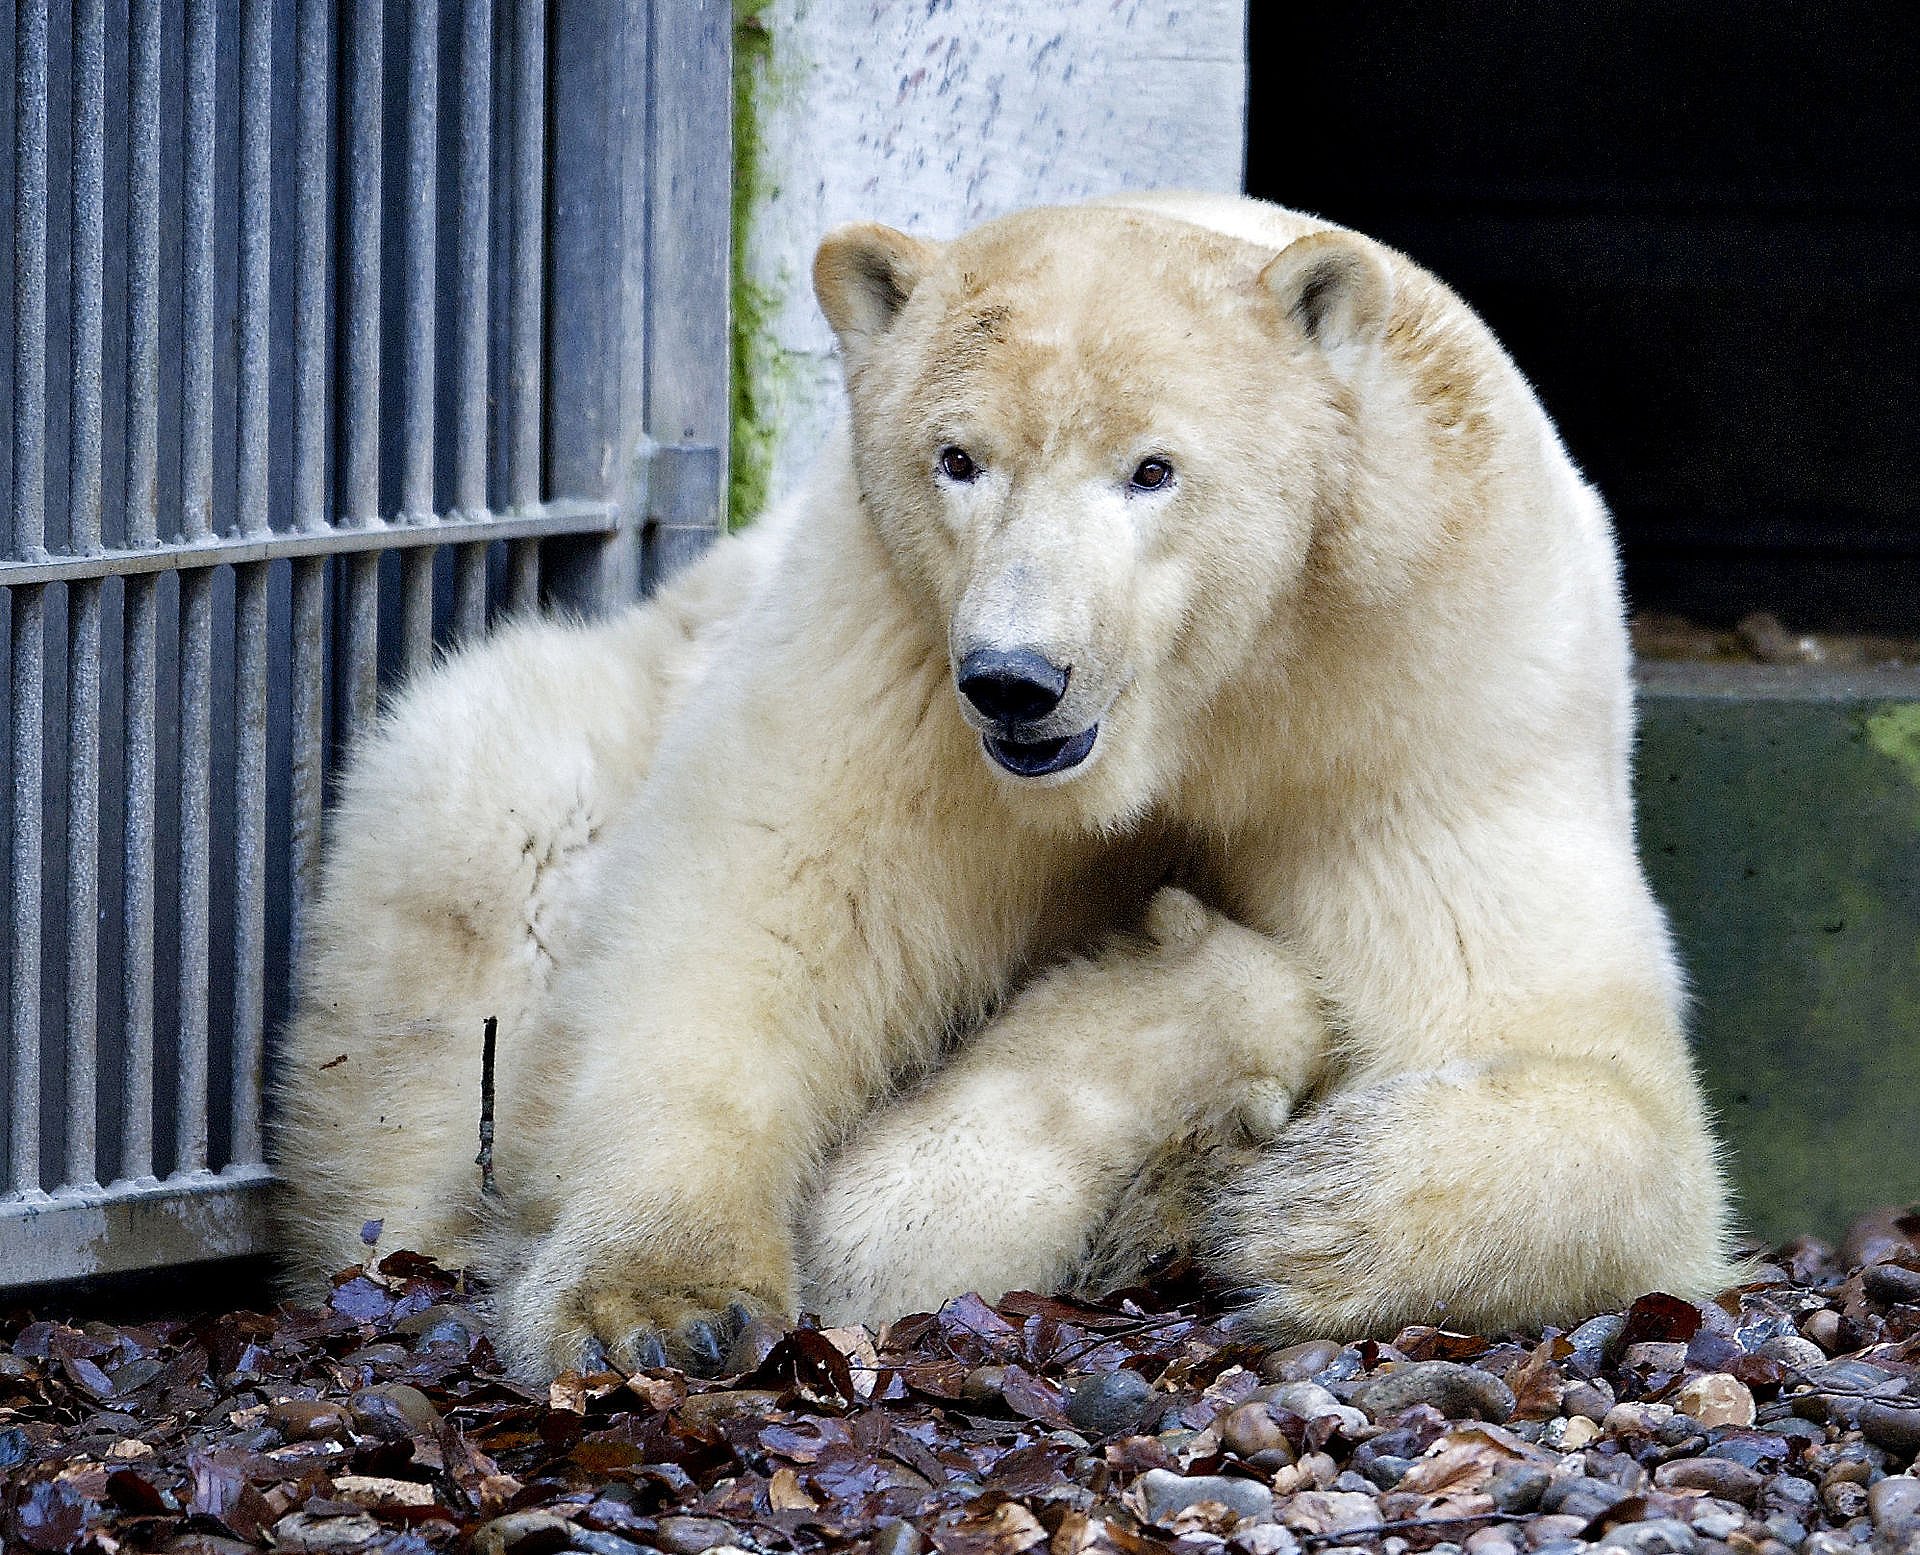 Isbjørn slap ud af indhegning i Derfor kunne det ske | TV 2 Lorry